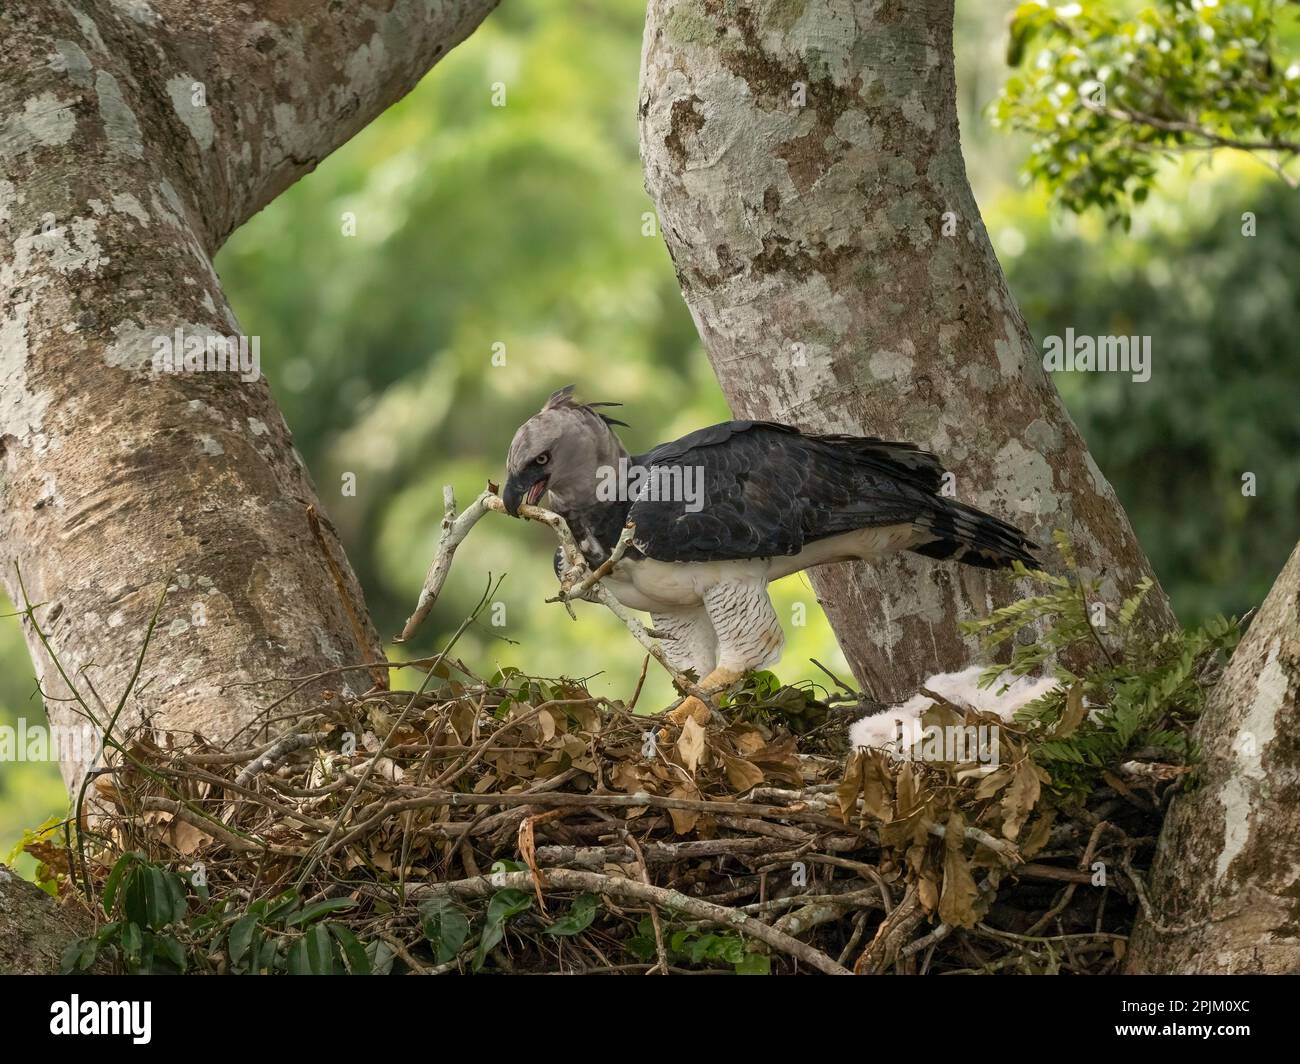 Harpy eagle building nest, Brazil, South America Stock Photo